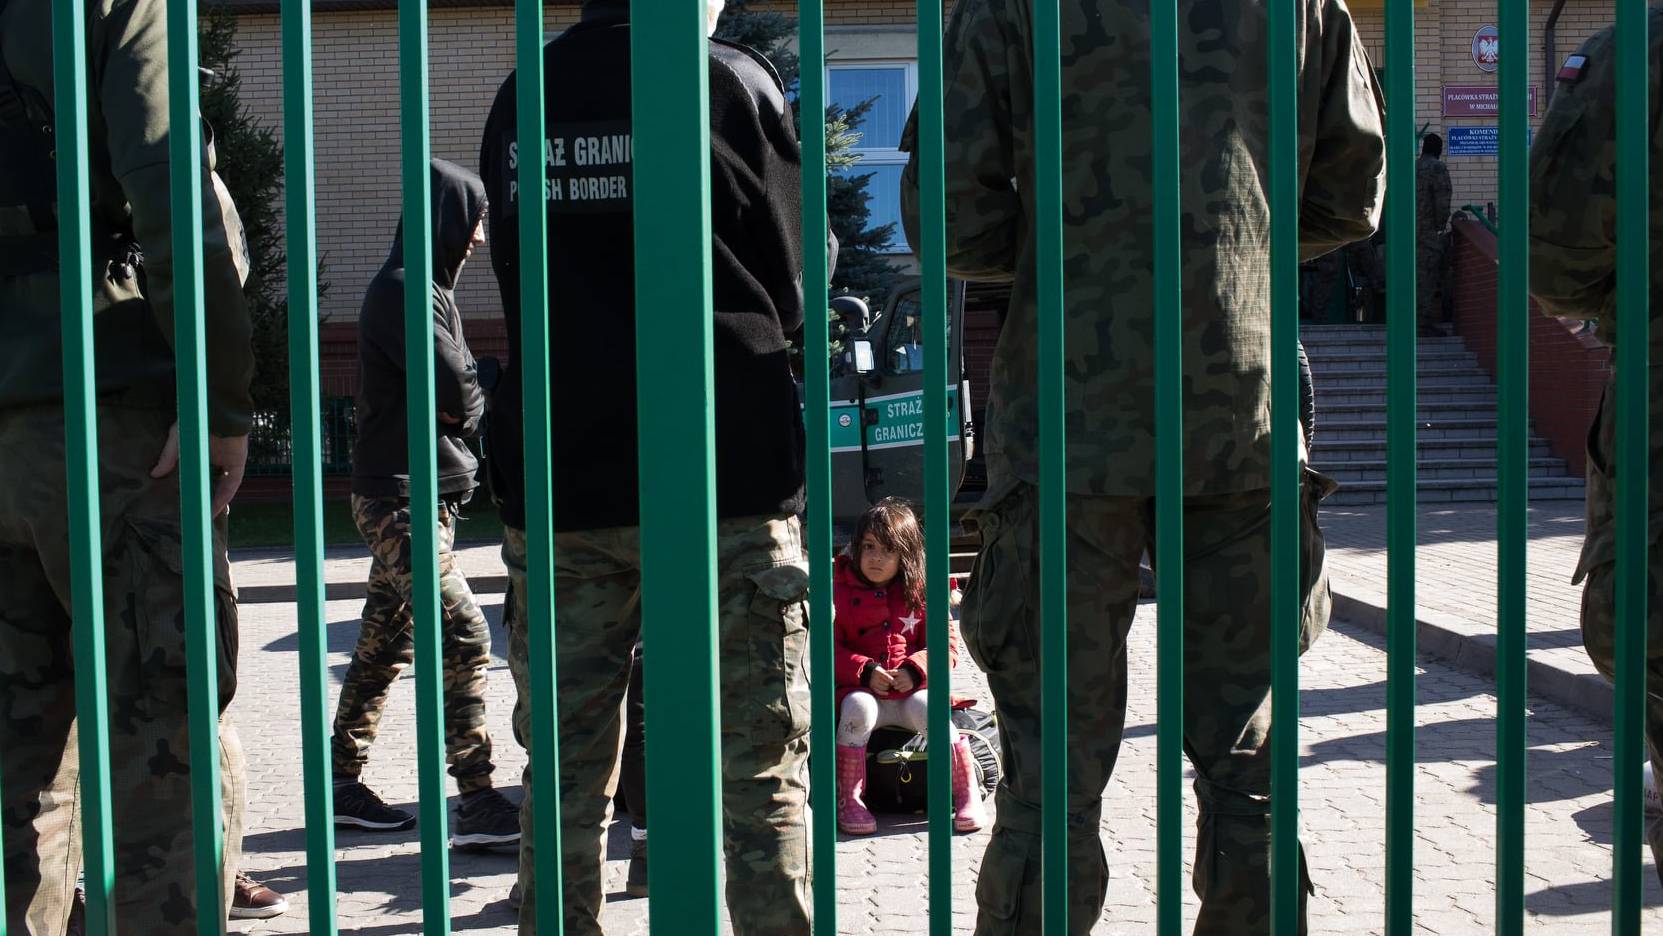 wo, strażnicy pilnują dzieci po przekroczeniu granicy